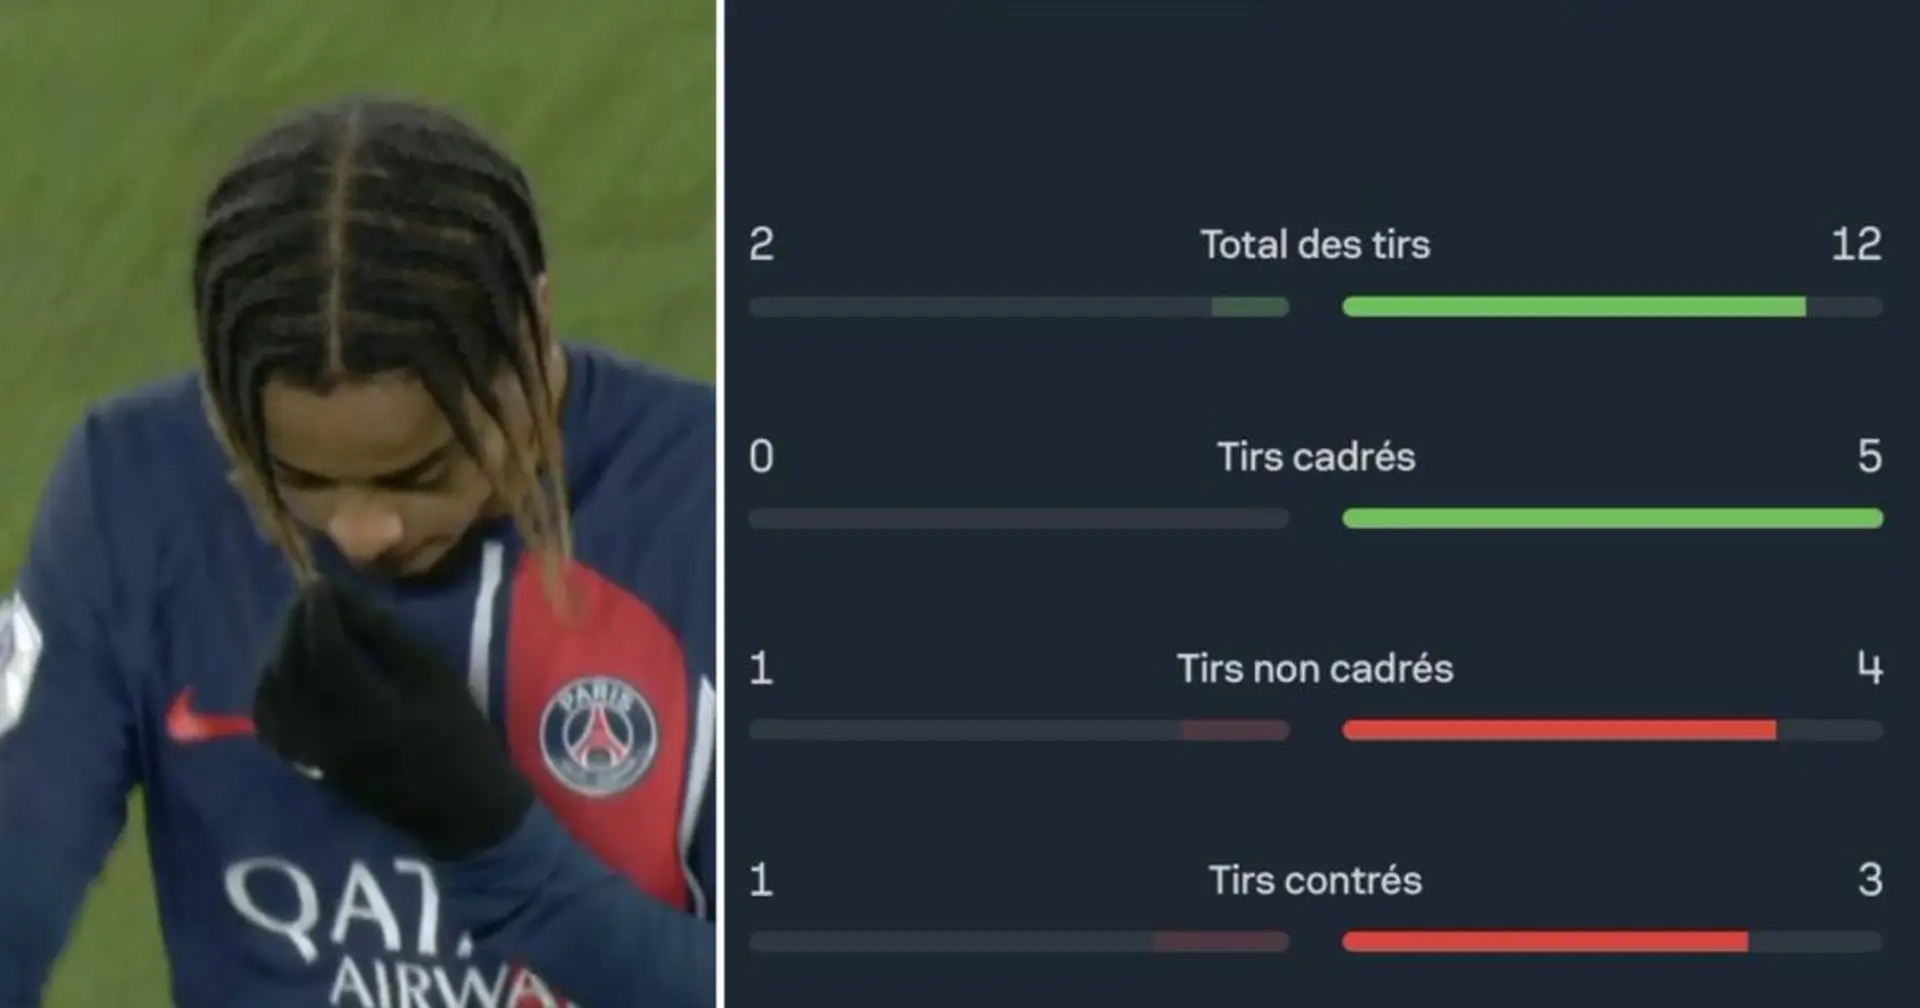 Le PSG a arrêté de jouer en 2MT contre Toulouse - le moment clé pour l'expliquer dévoilé